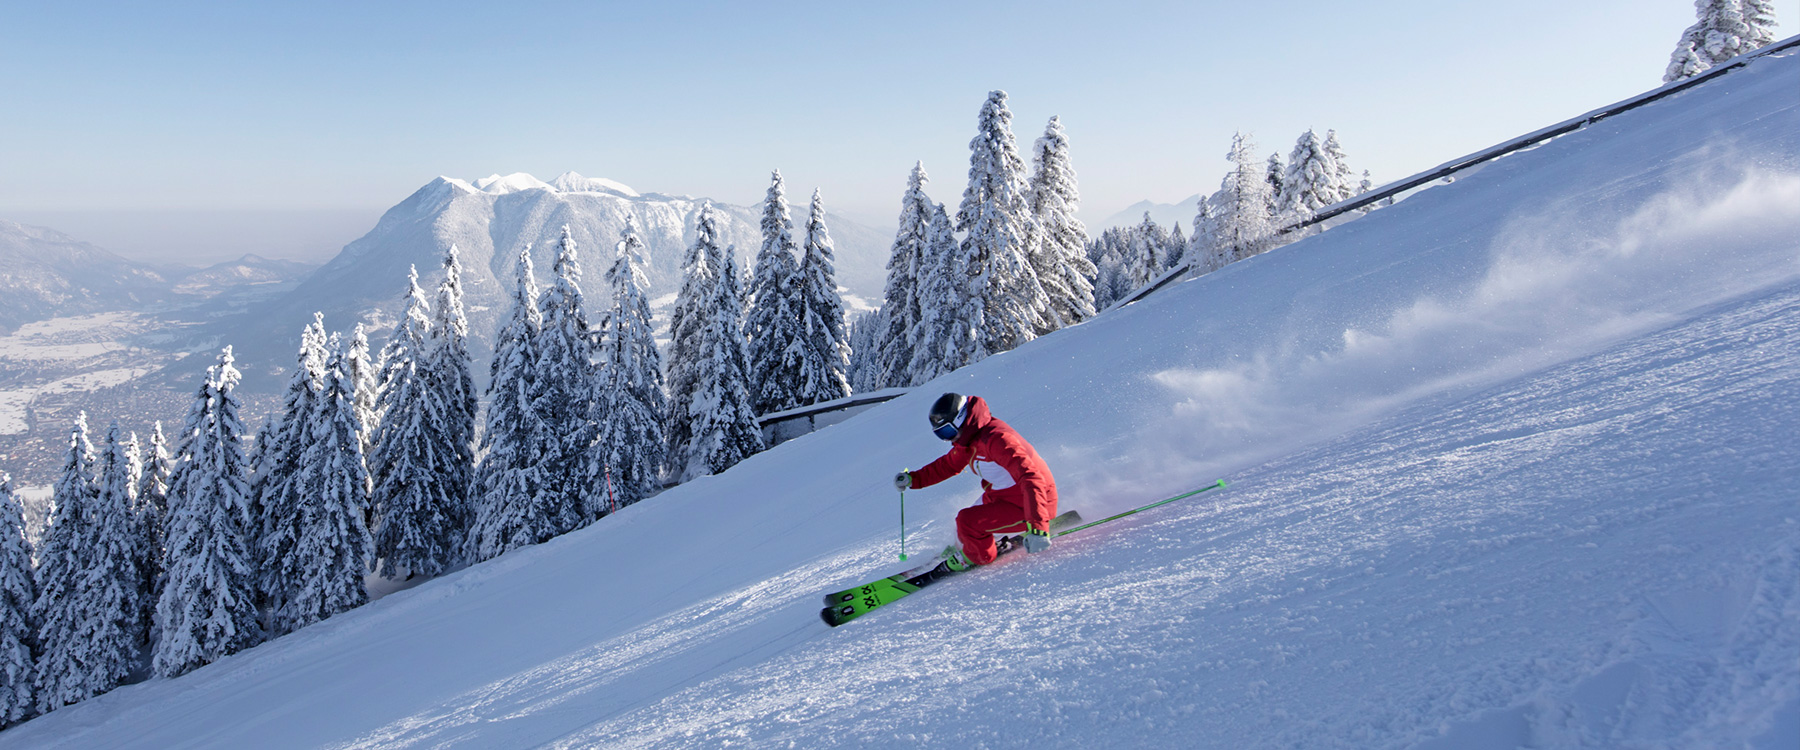 Skikurse in Garmisch-Partenkirchen